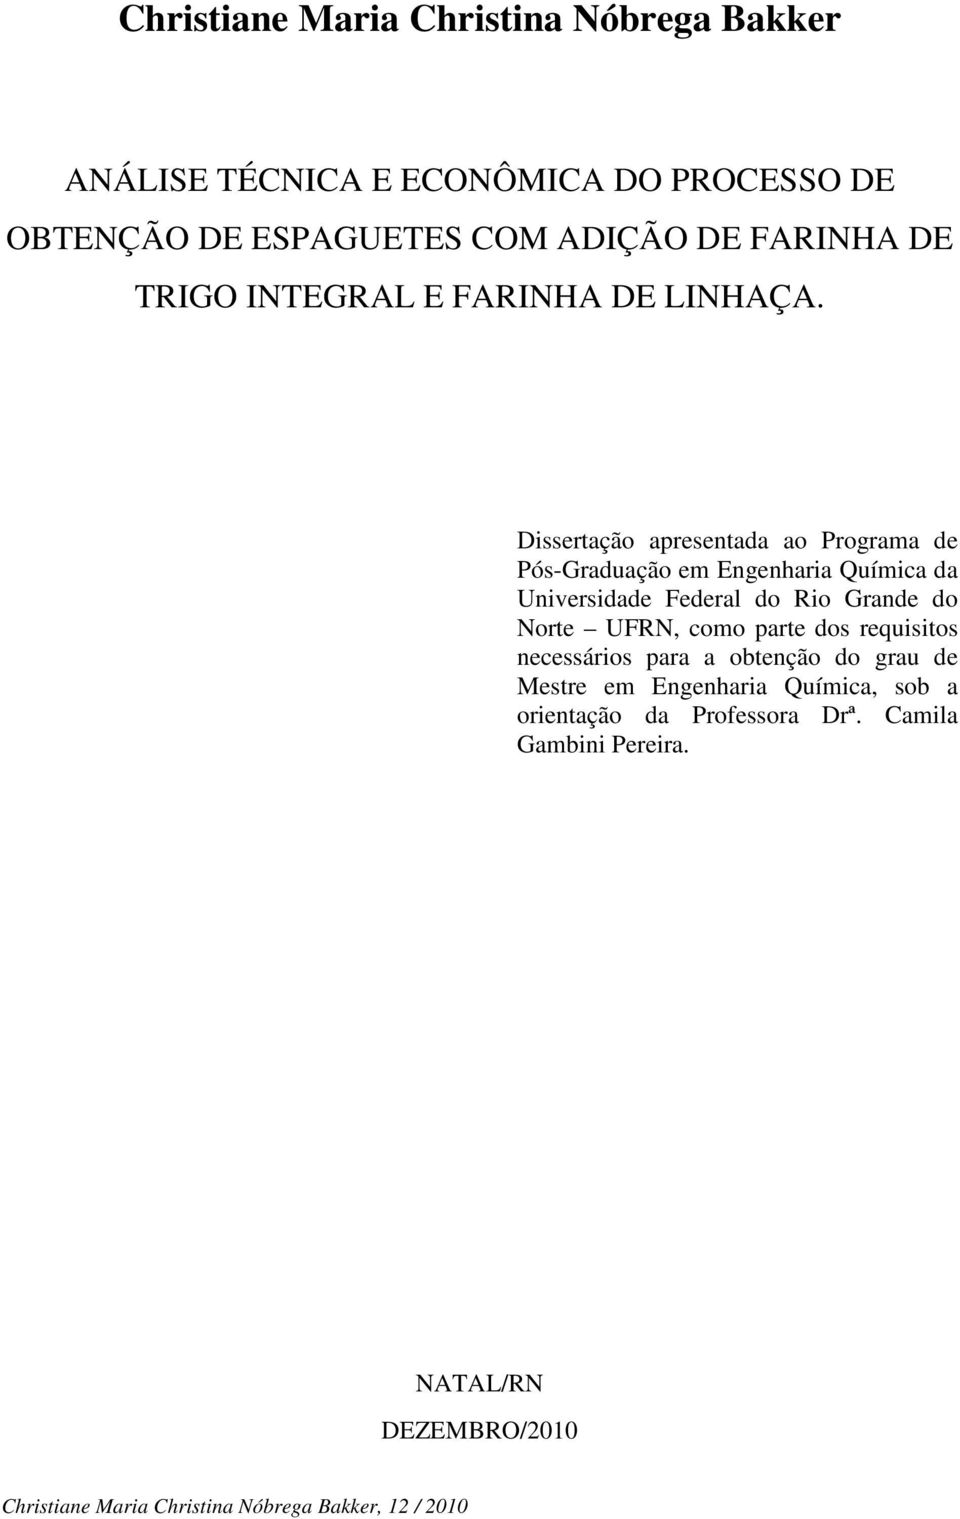 Dissertação apresentada ao Programa de Pós-Graduação em Engenharia Química da Universidade Federal do Rio Grande do